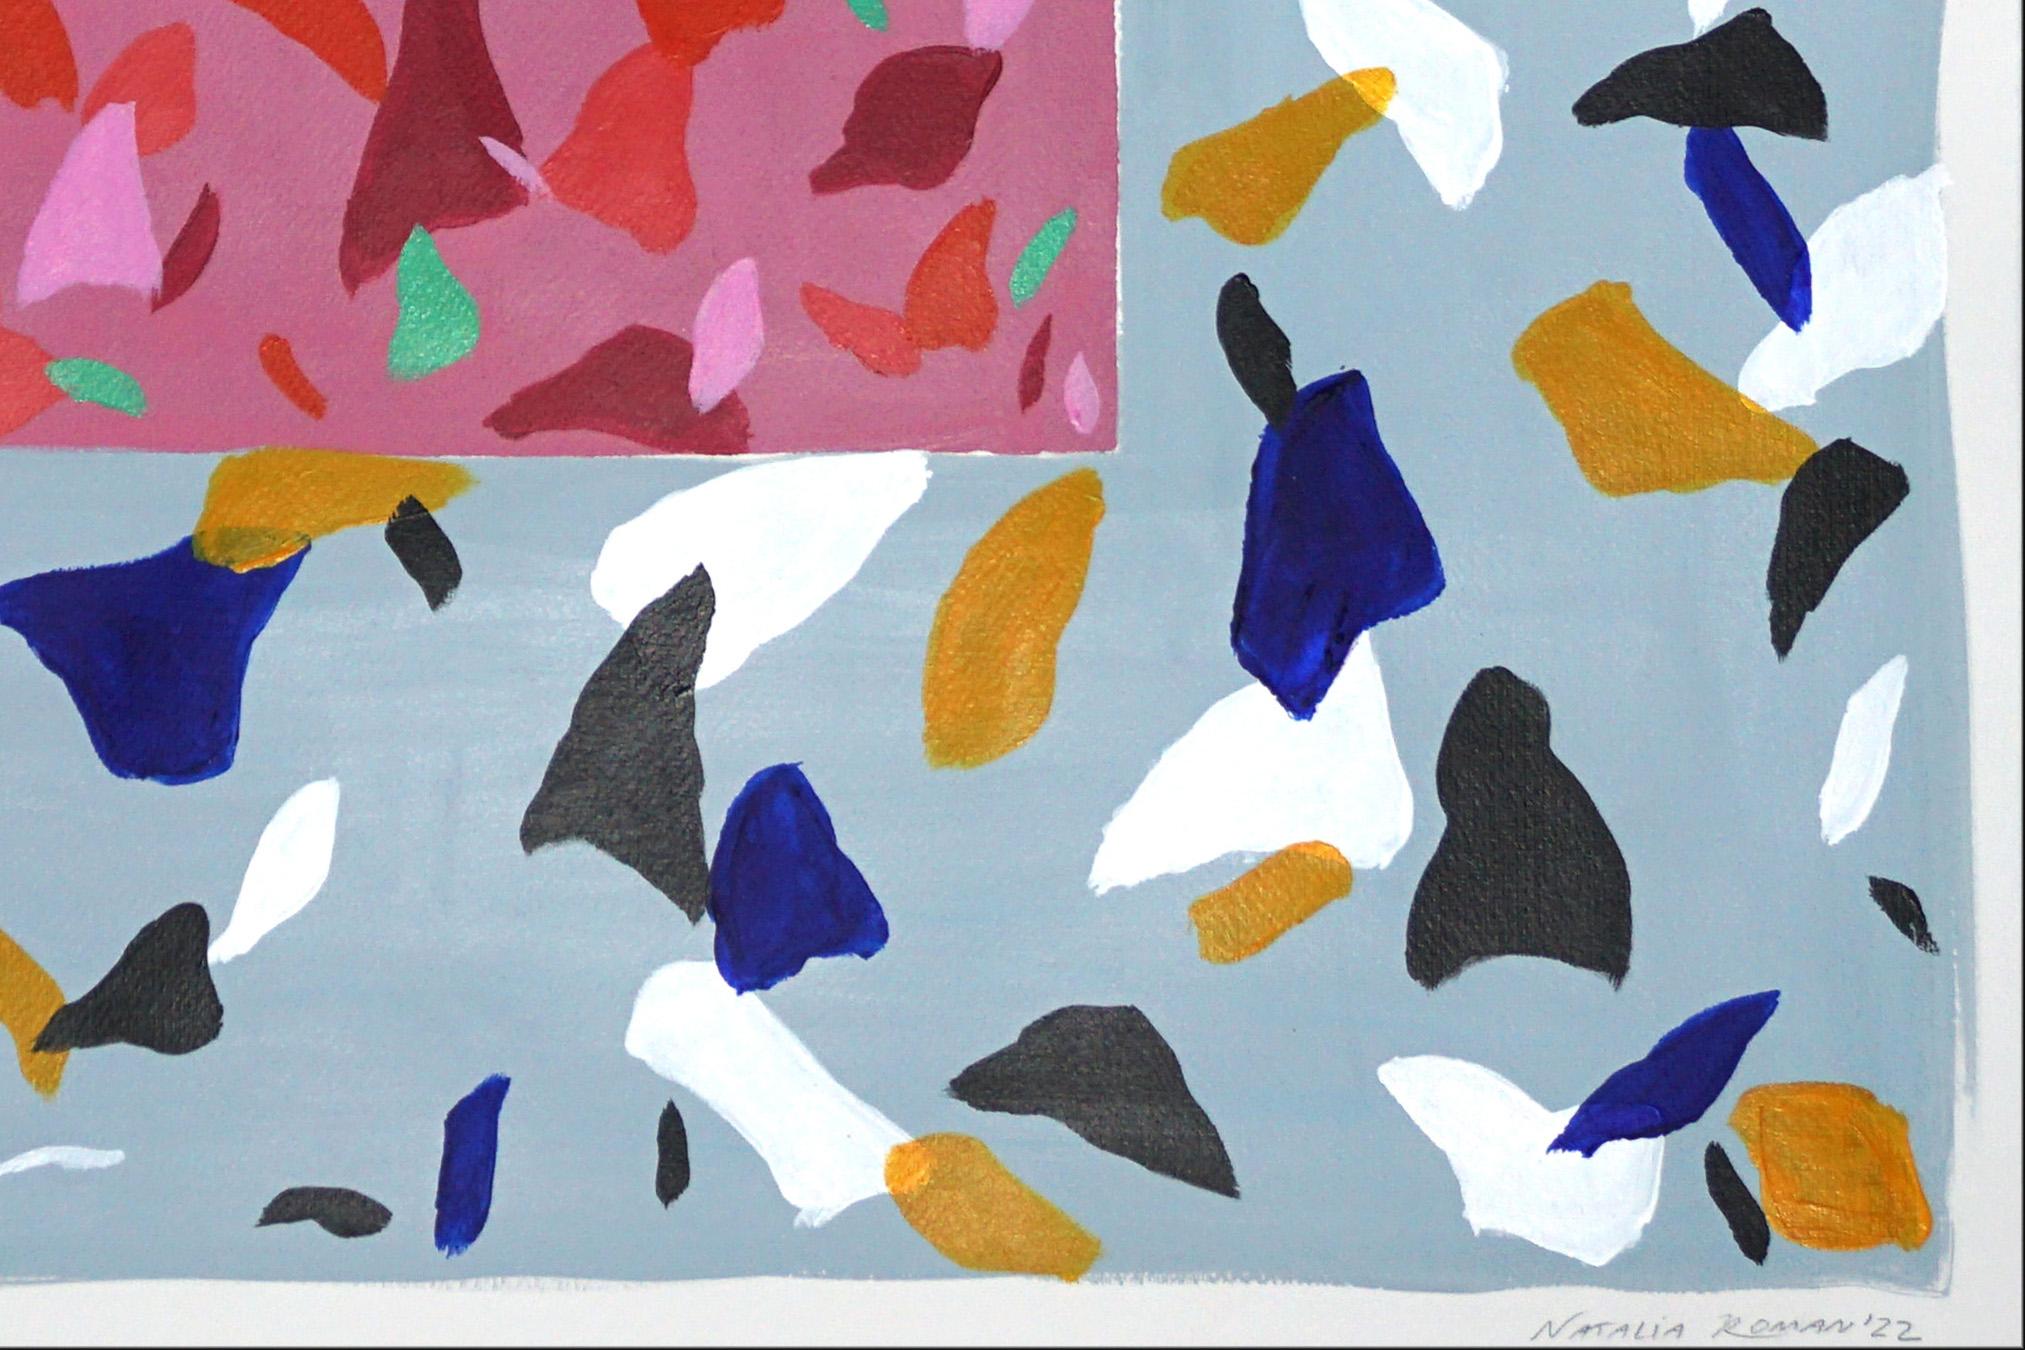 Mauvefarbene Camouflage auf Schiefer, quadratische Terrazzo-Fliesen in Rosa und Orange (Grau), Still-Life Painting, von Natalia Roman